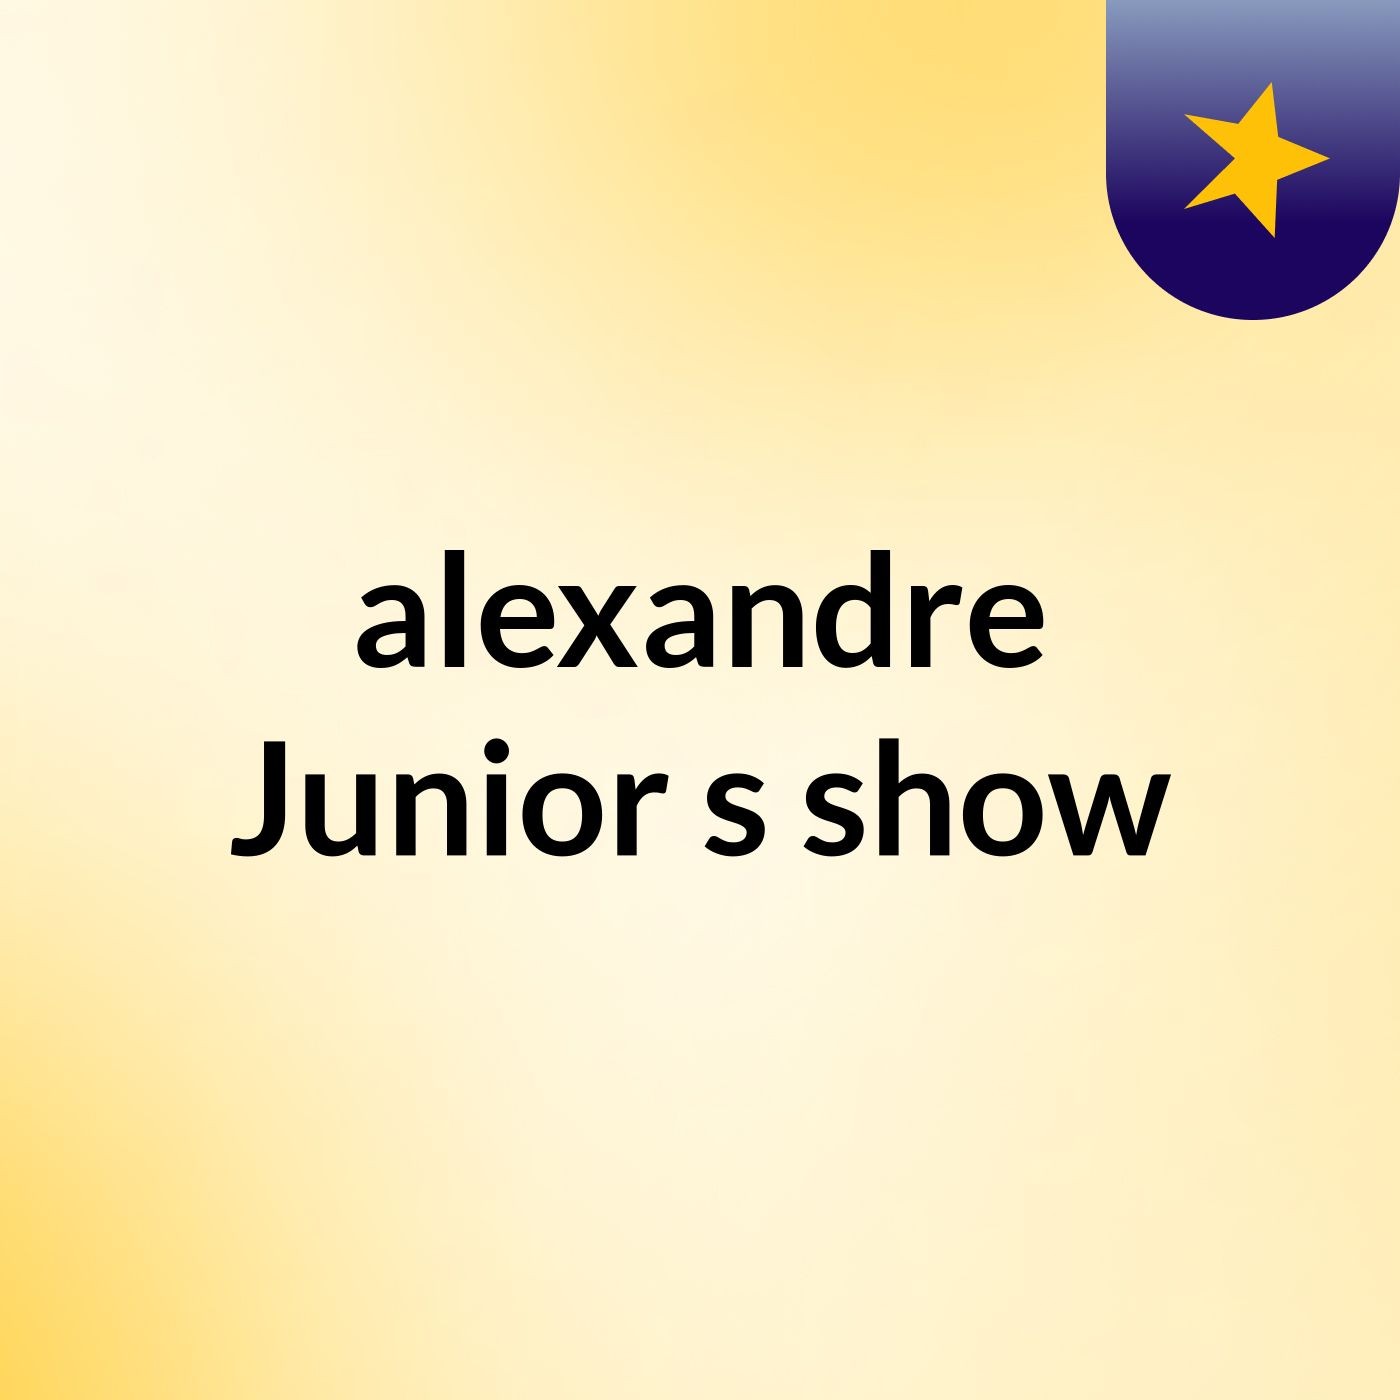 Episódio 8 - alexandre Junior's show